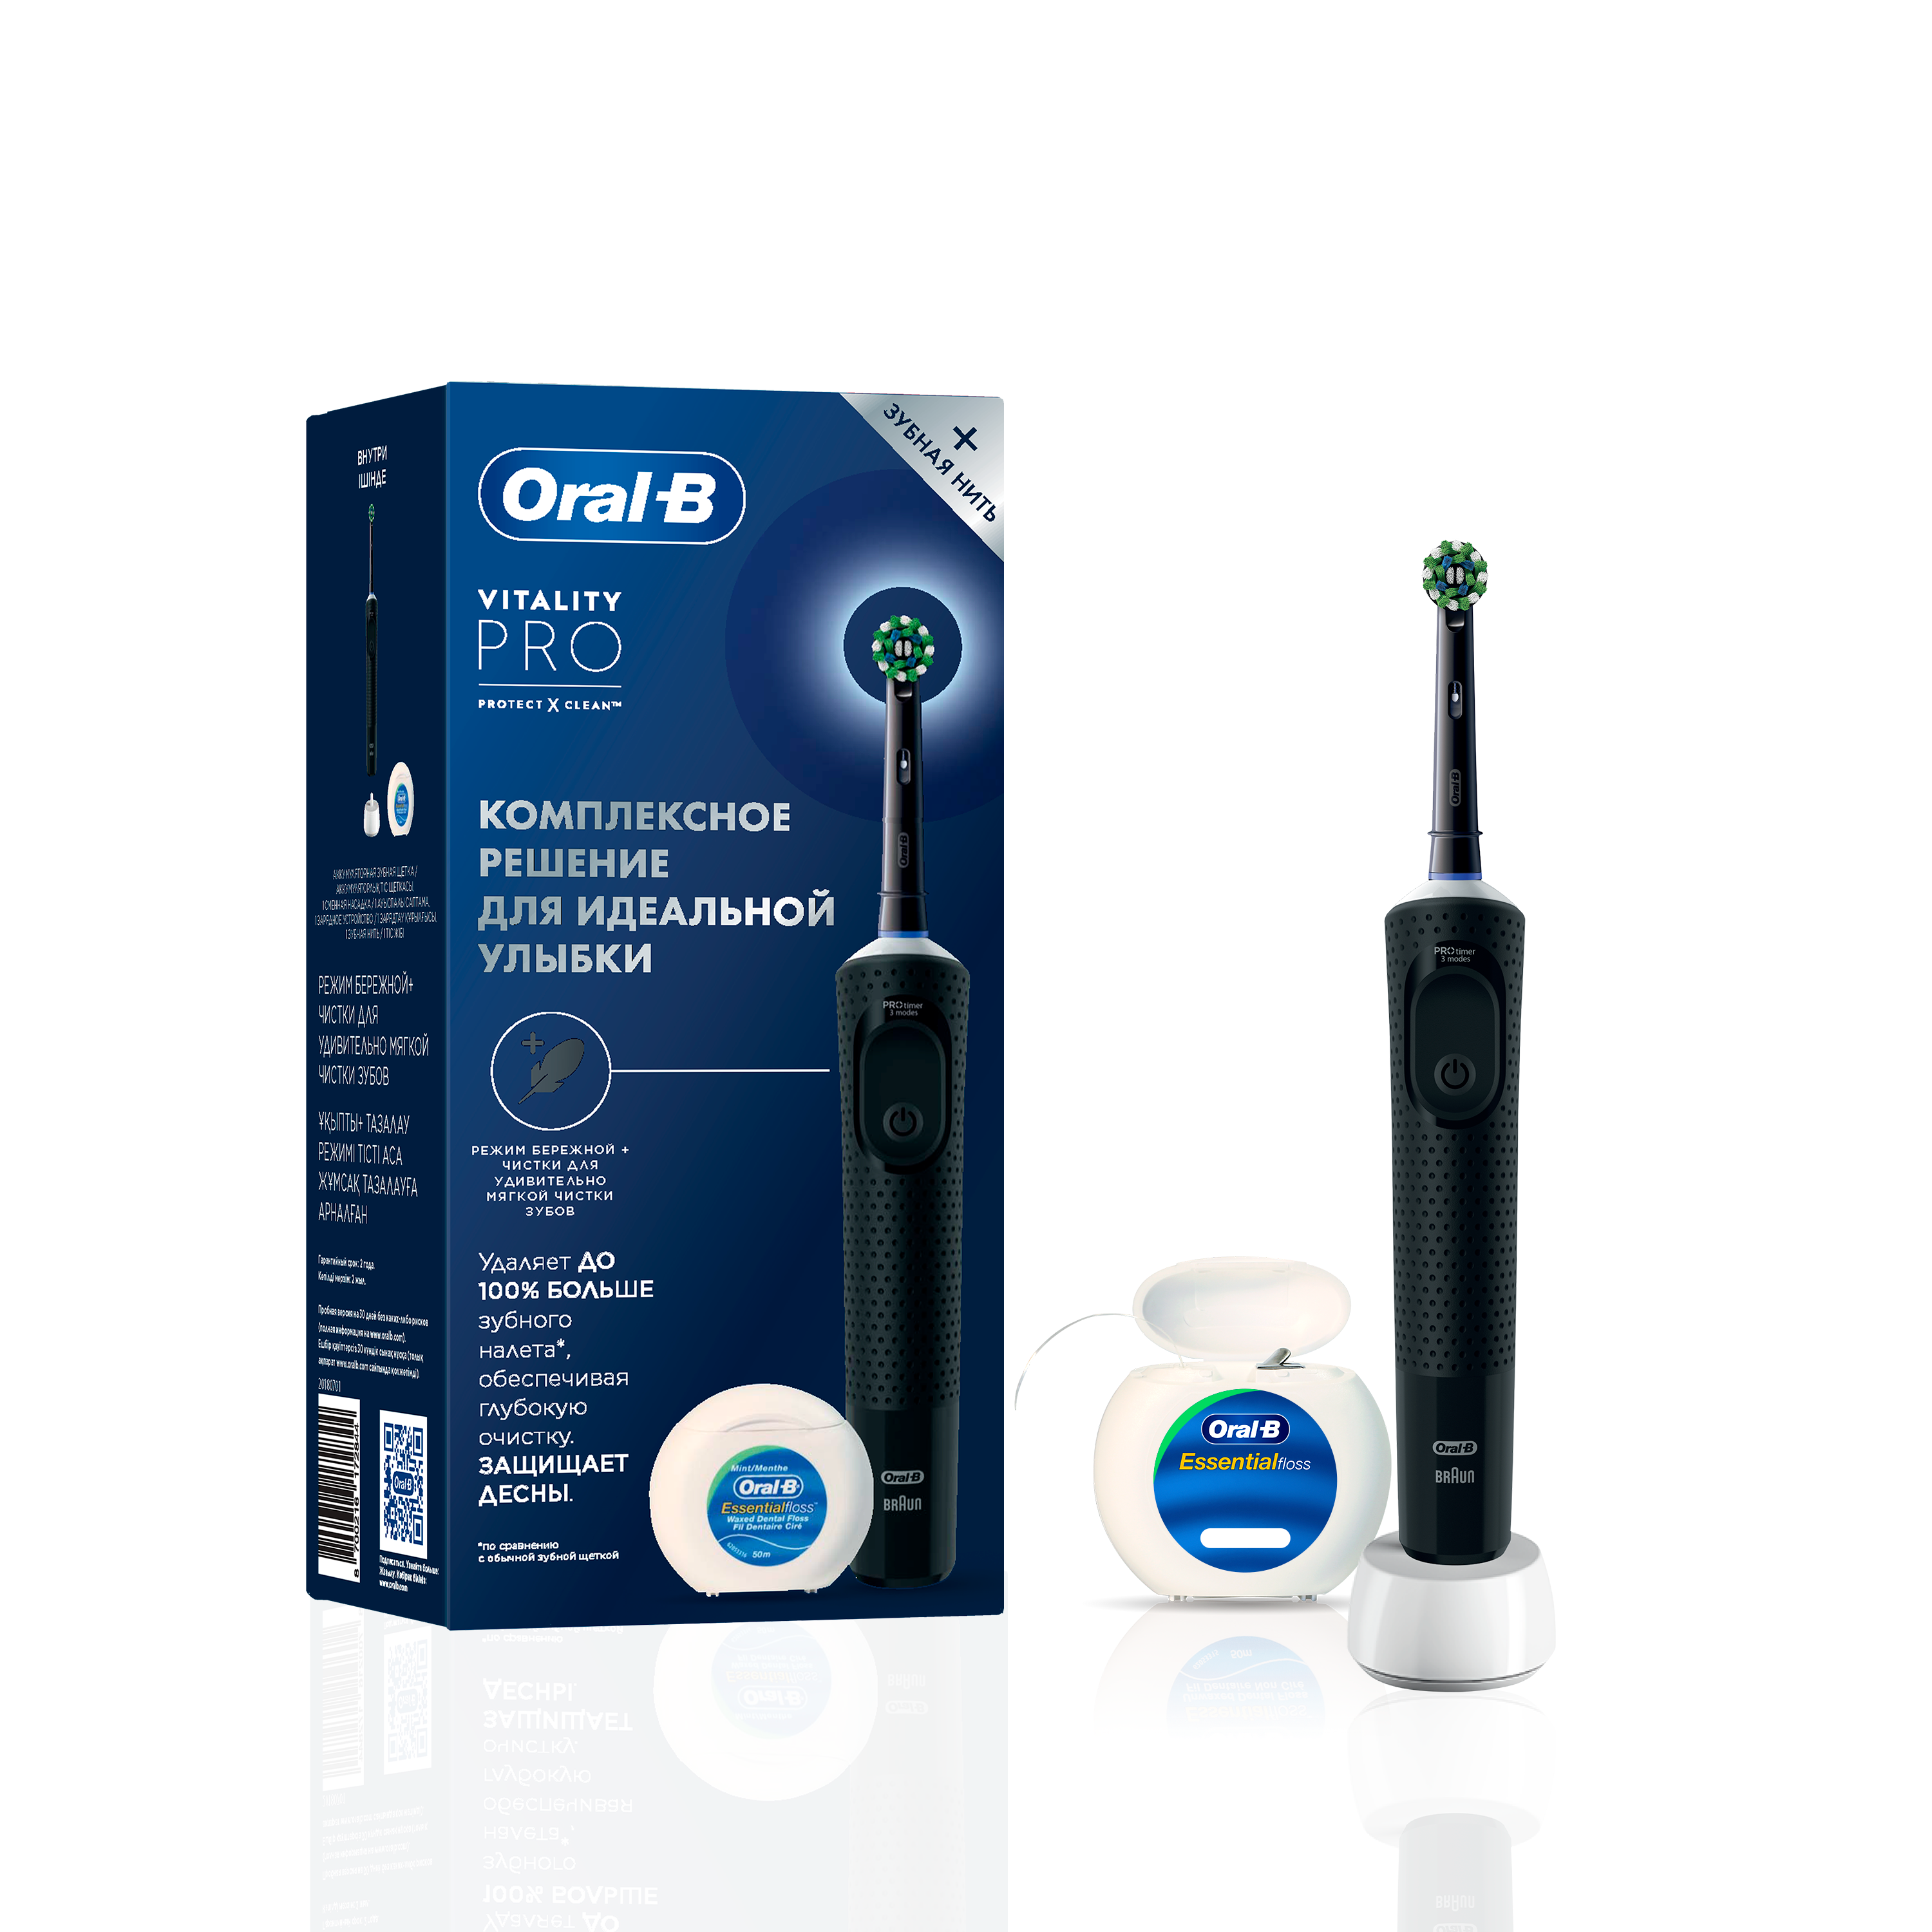 Набор электрическая зубная щётка Oral-B Vitality Pro c зубной нитью, черная набор электрическая зубная щётка oral b vitality pro c зубной нитью черная